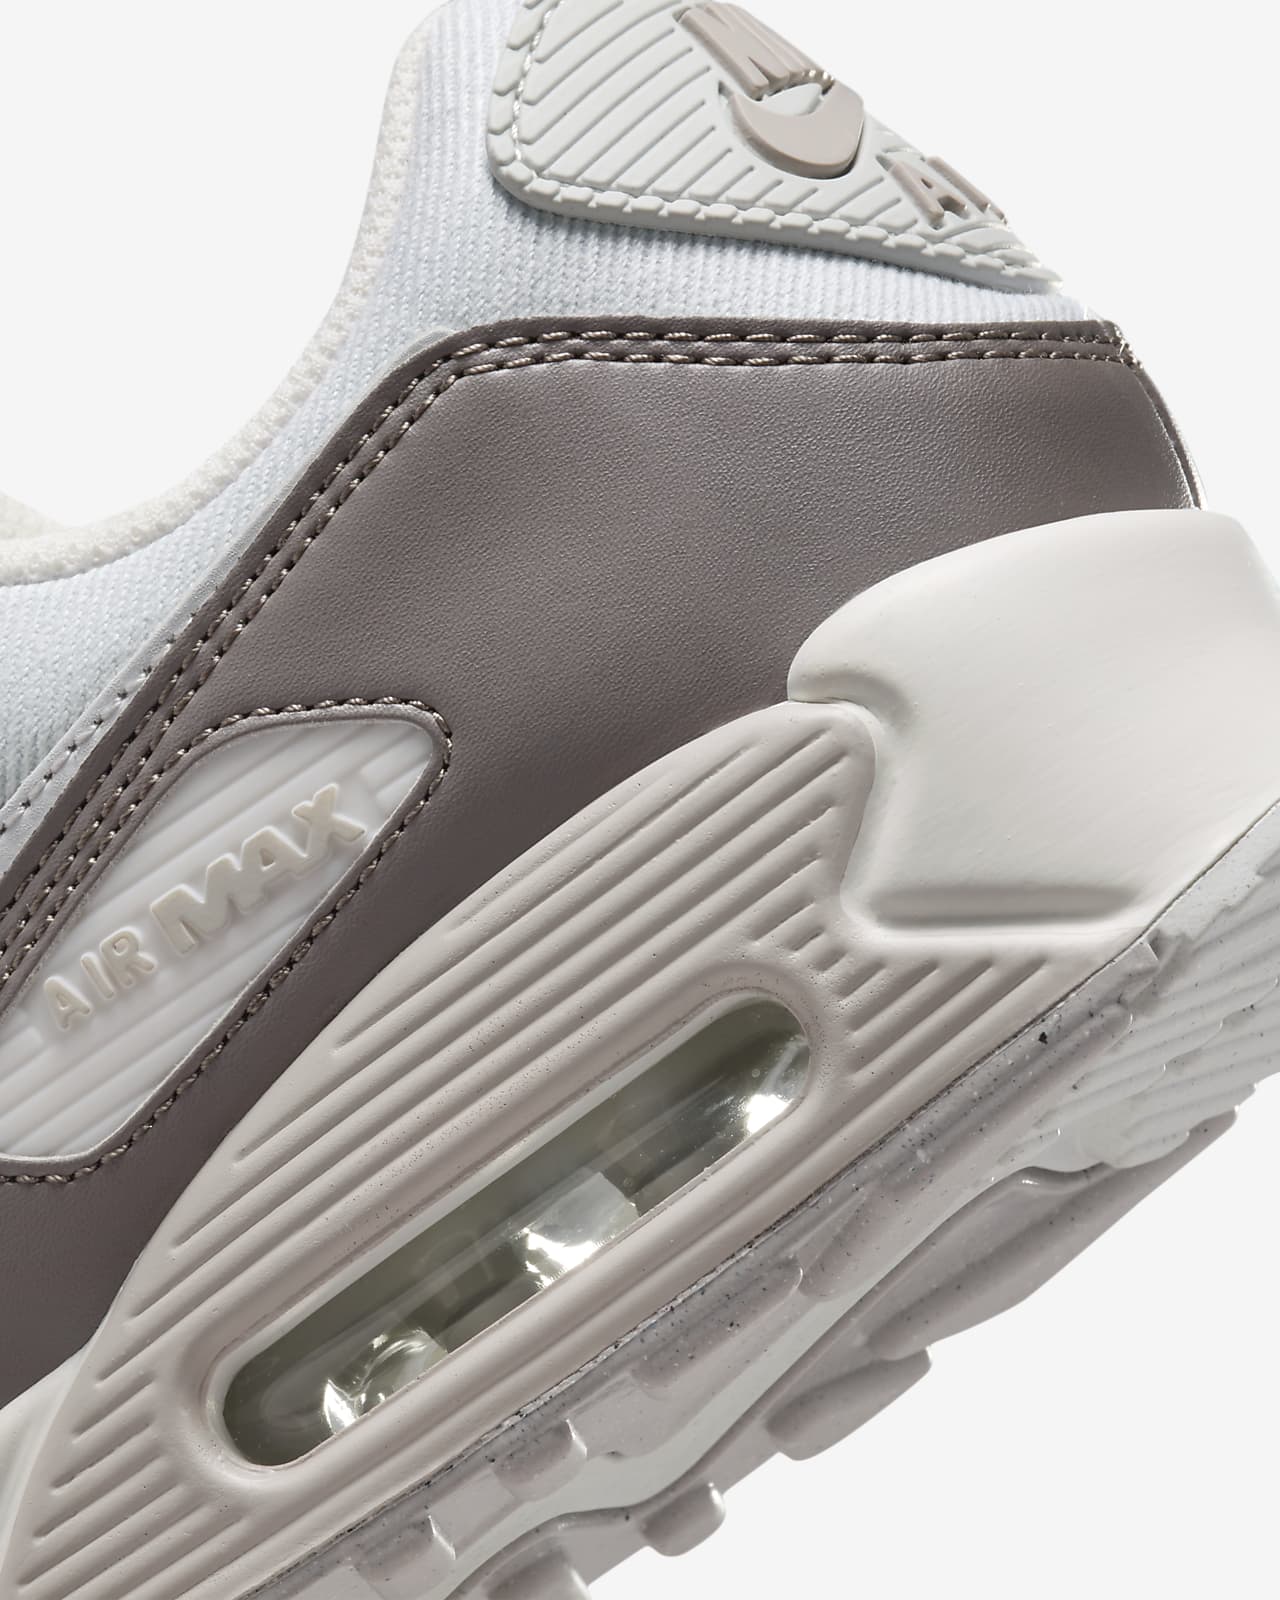 Men's Air Max 90 Shoe, Nike